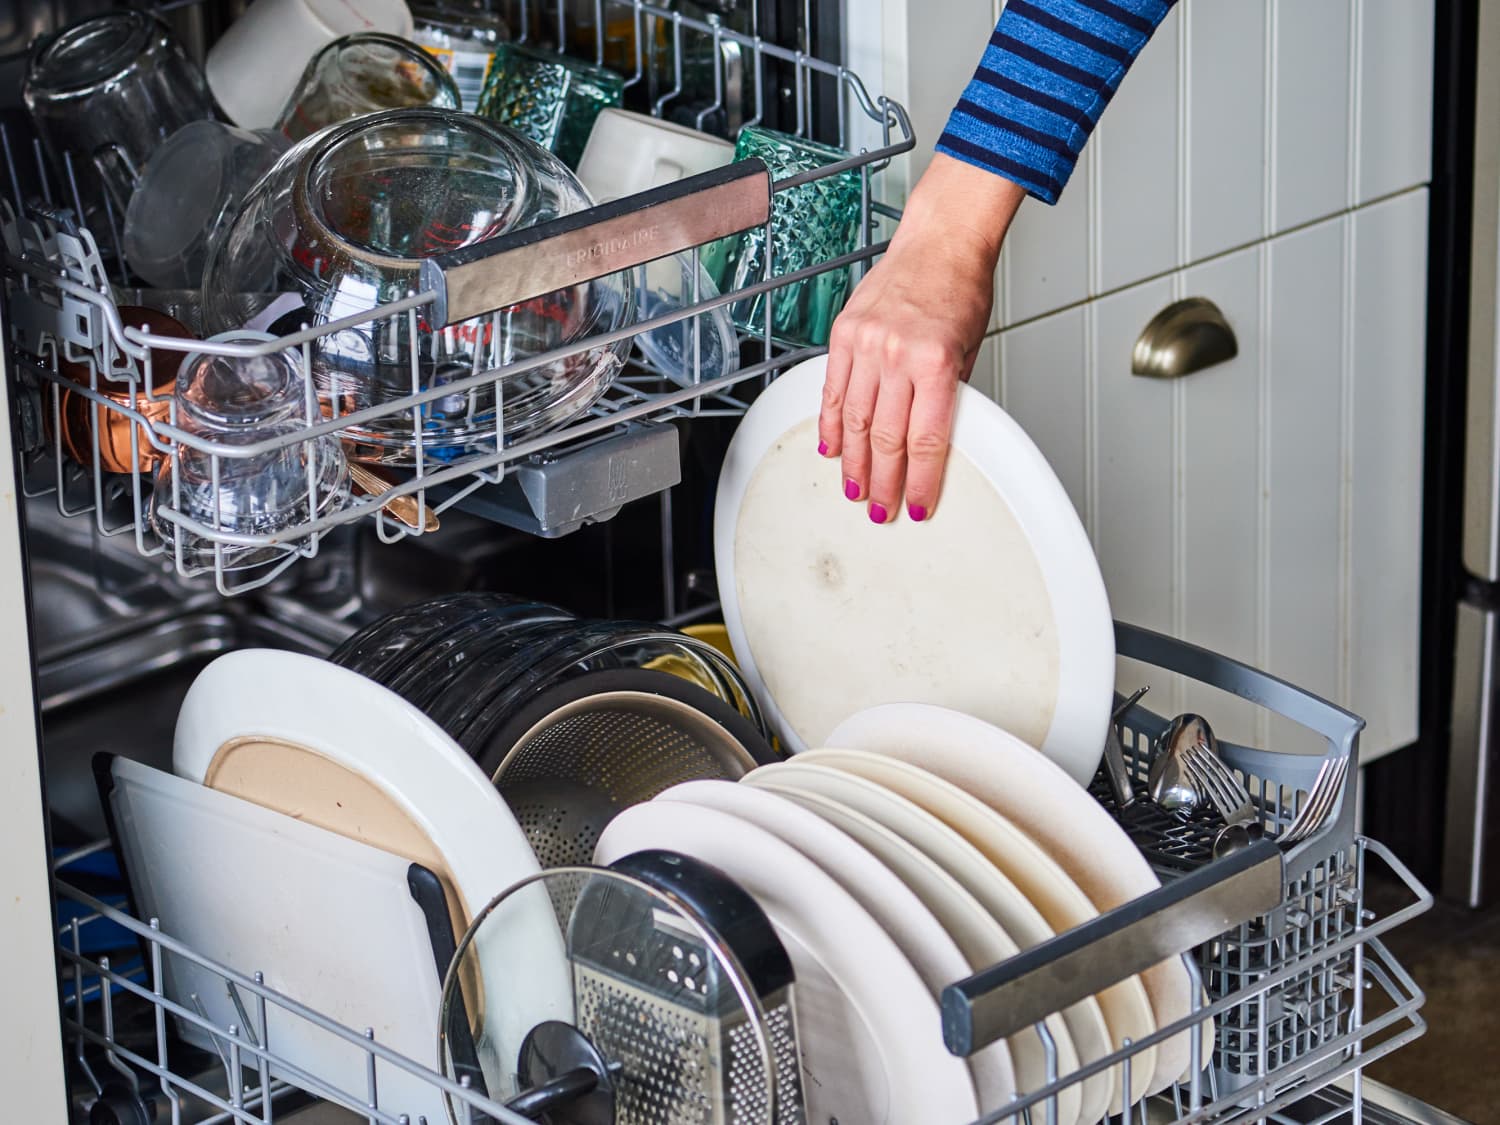 Máy rửa bao giờ cũng làm sạch toàn diện bát đĩa nên hãy yên tâm khi sử dụng